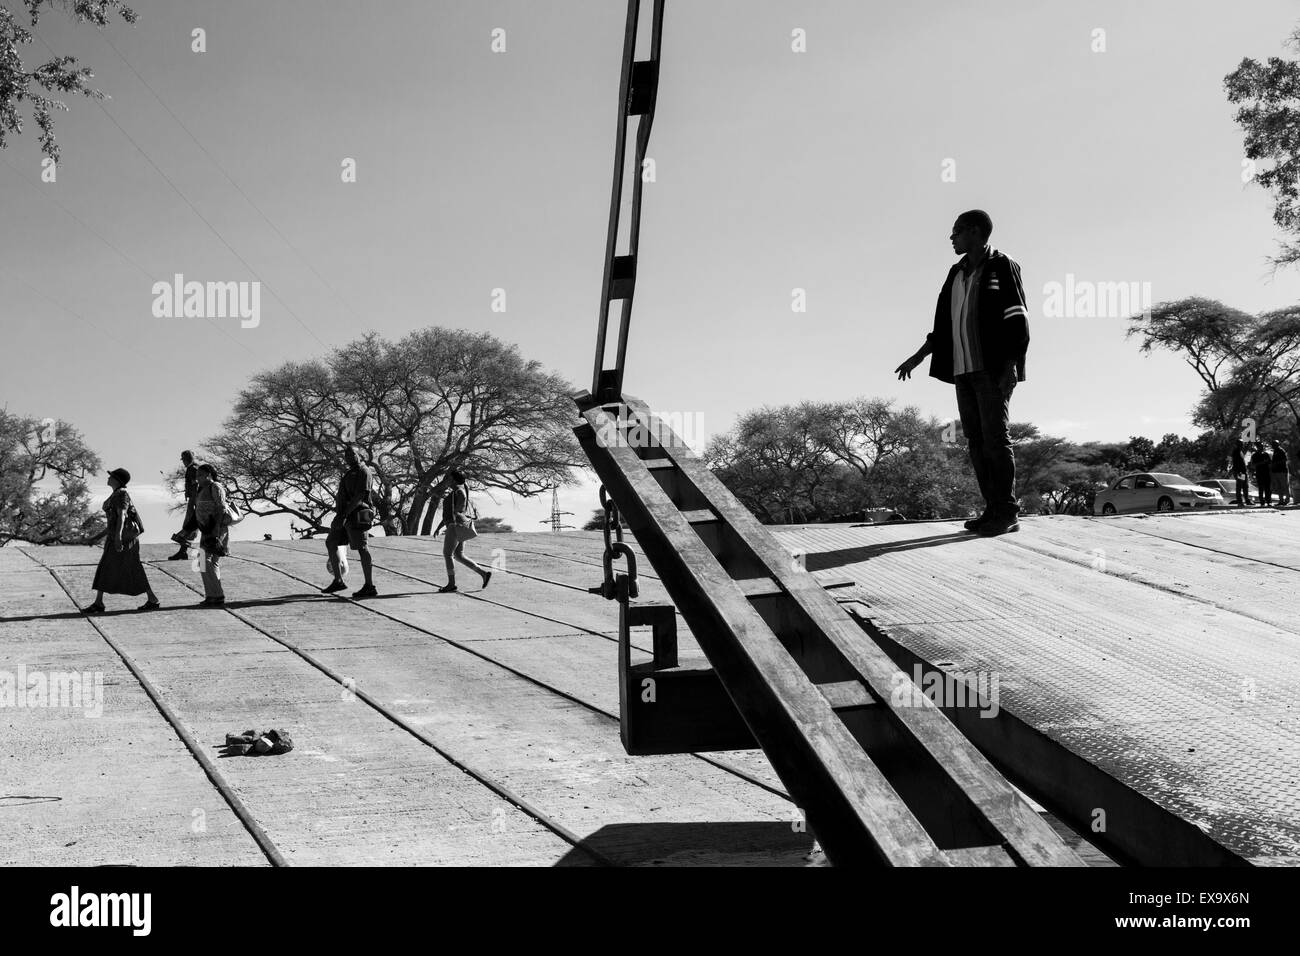 L'Afrique, Zambie, Kazungula, travailleur en bateau se trouve sur le passage de bac de bow Zambèze vers la frontière du Botswana Banque D'Images